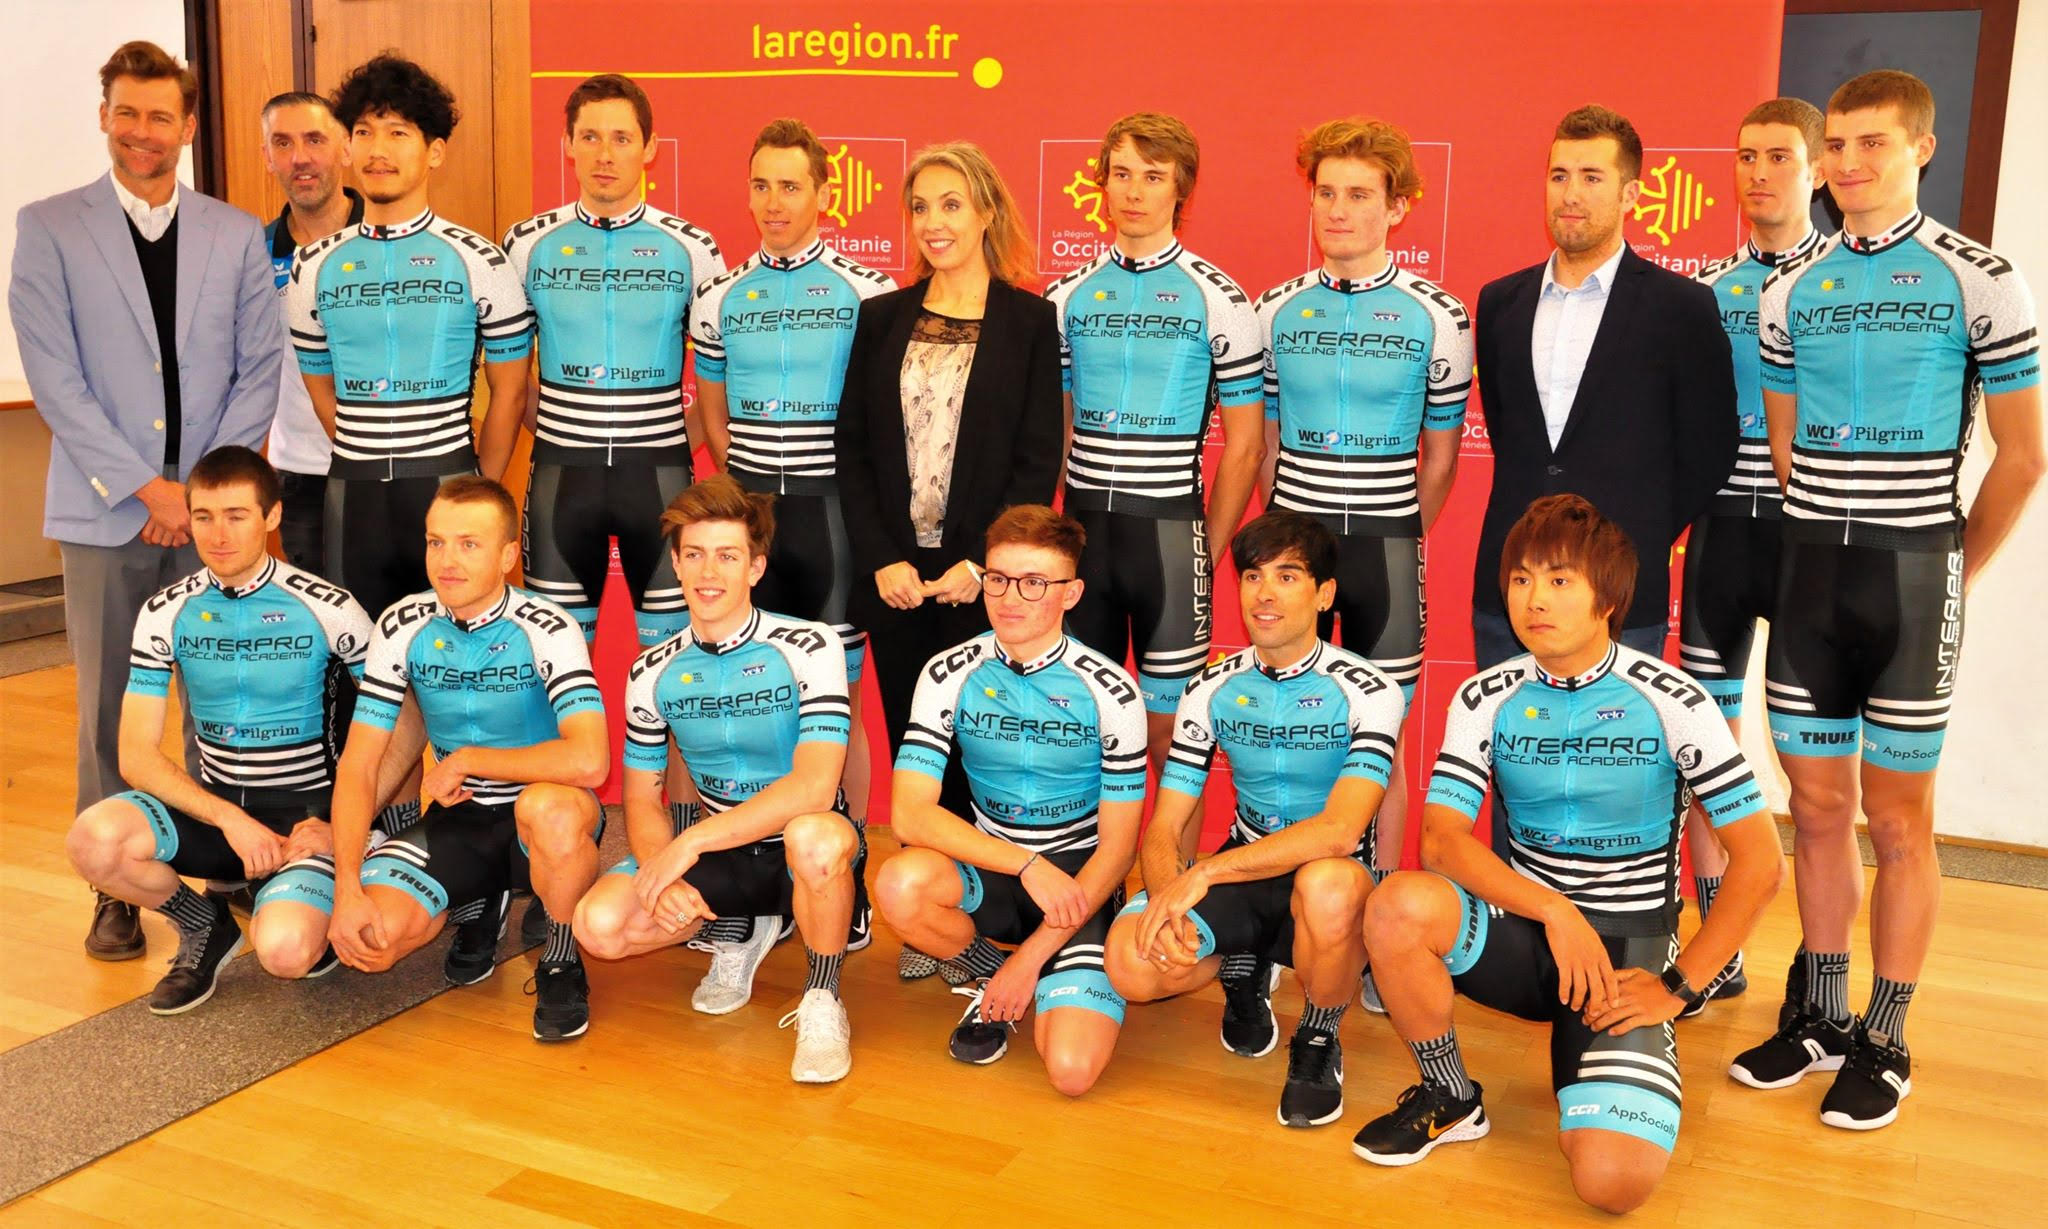 フランスの拠点となるリル・ジョルダンでチームプレゼンテーションを行ったインタープロ サイクリングアカデミー